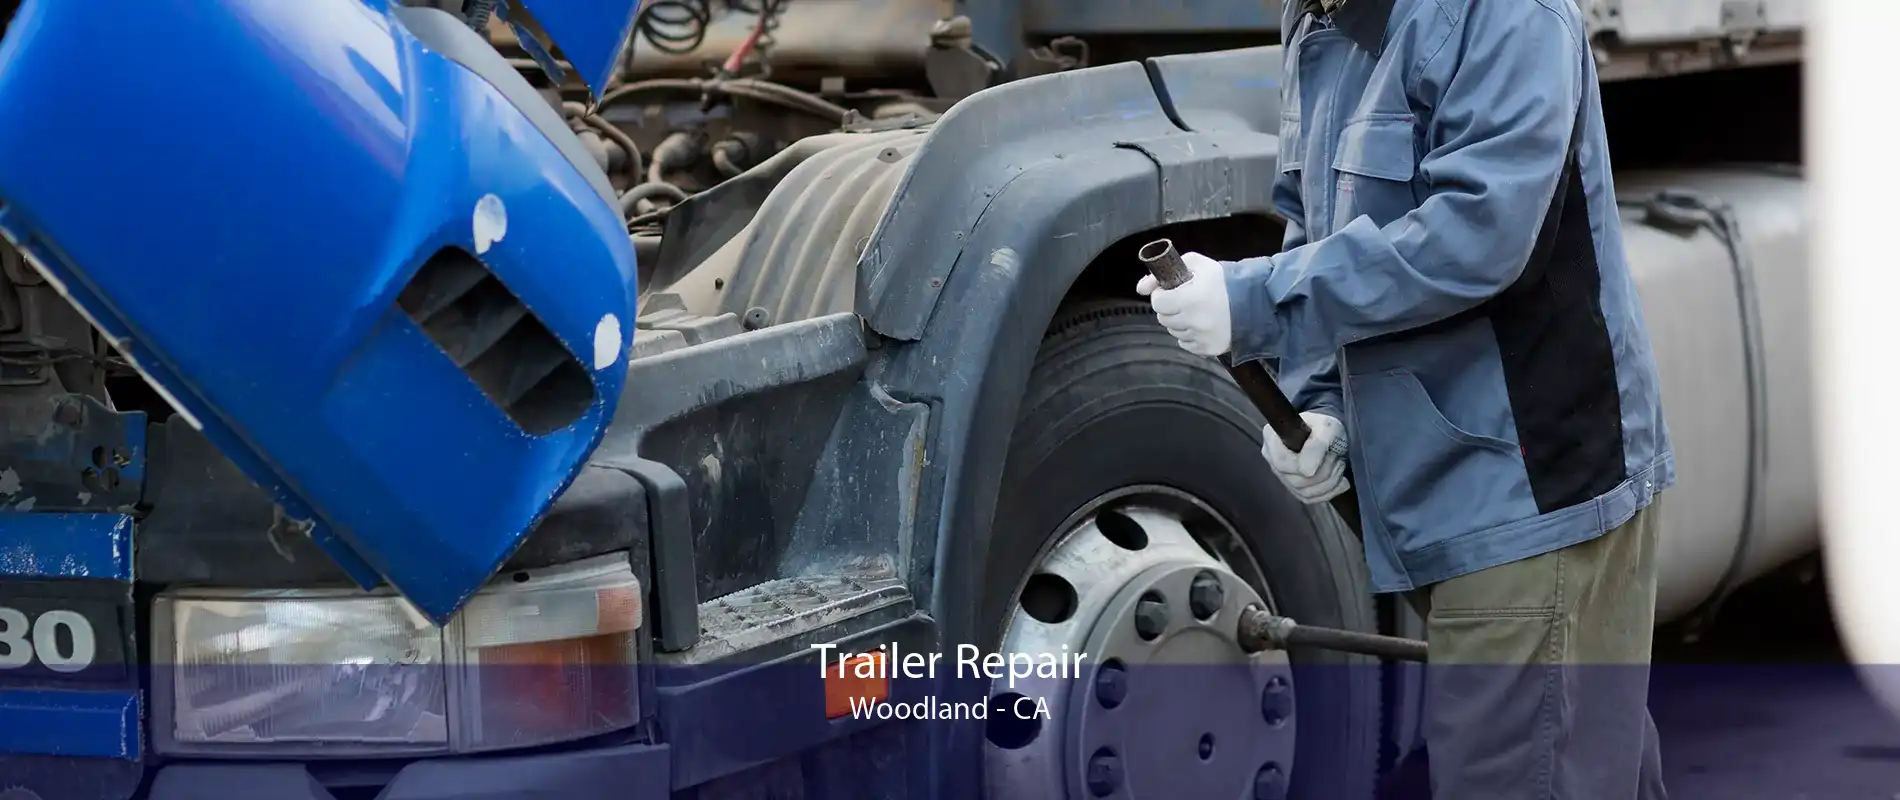 Trailer Repair Woodland - CA